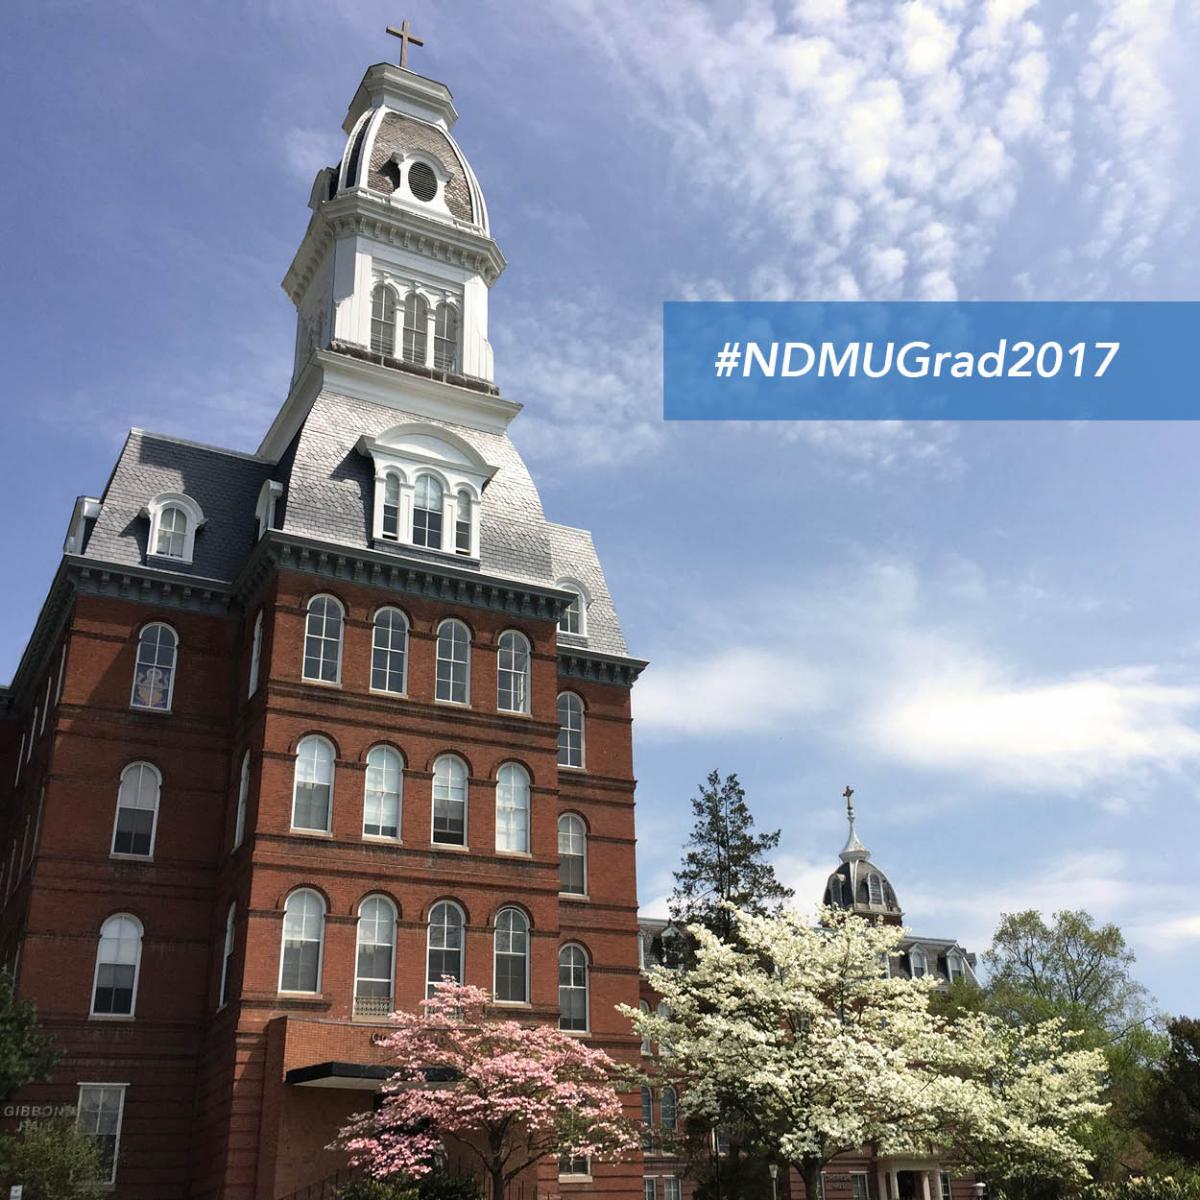 Gibbons tower "#NDMUGrad2017"